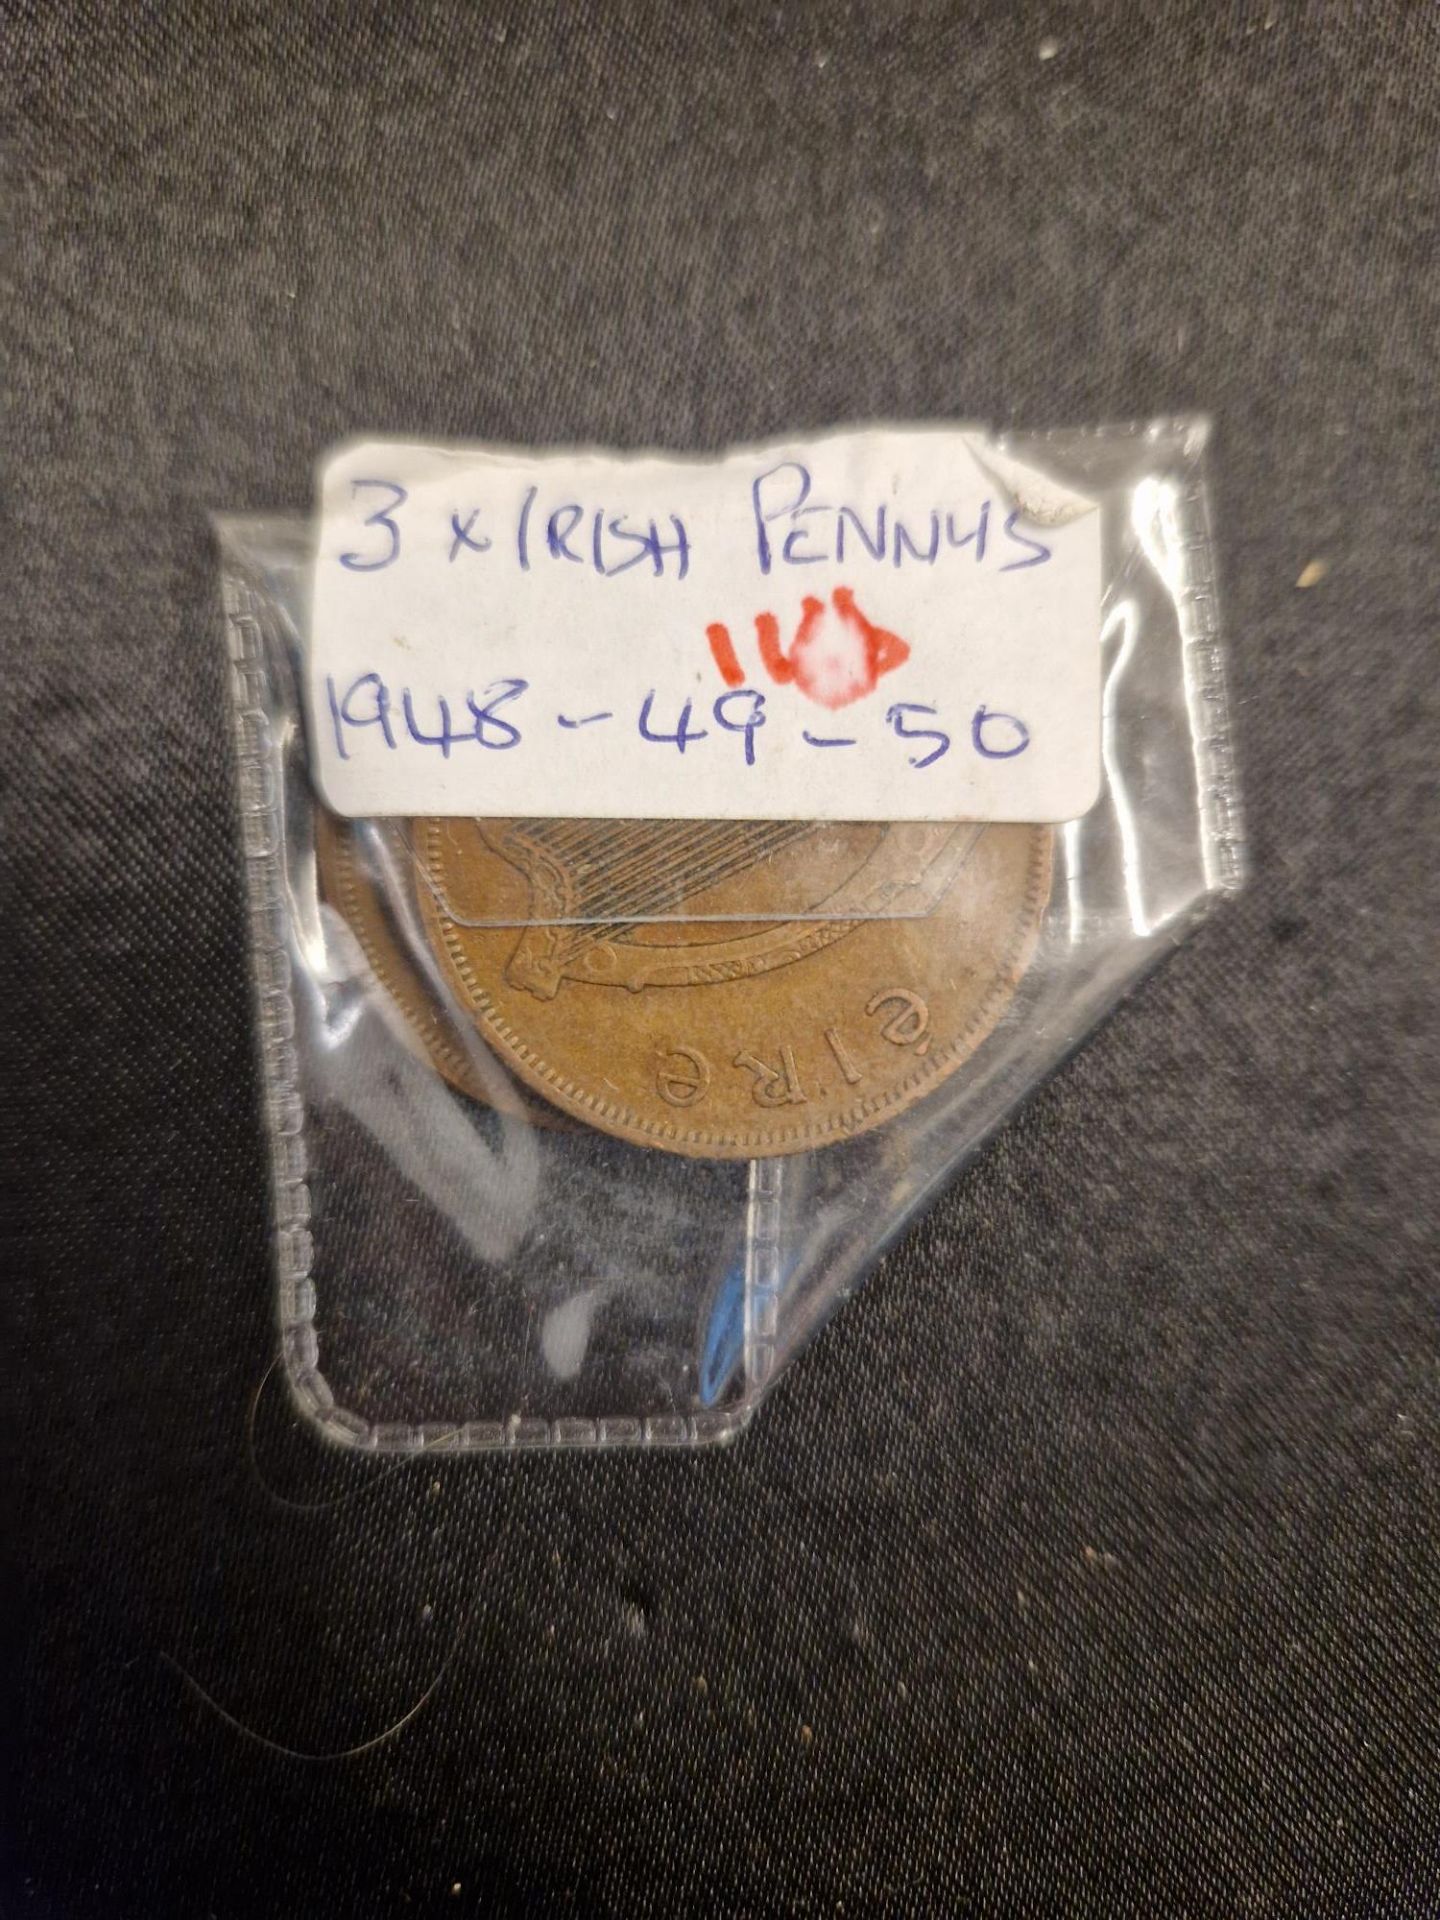 3 x irish pennys 1948 - 49 - 50